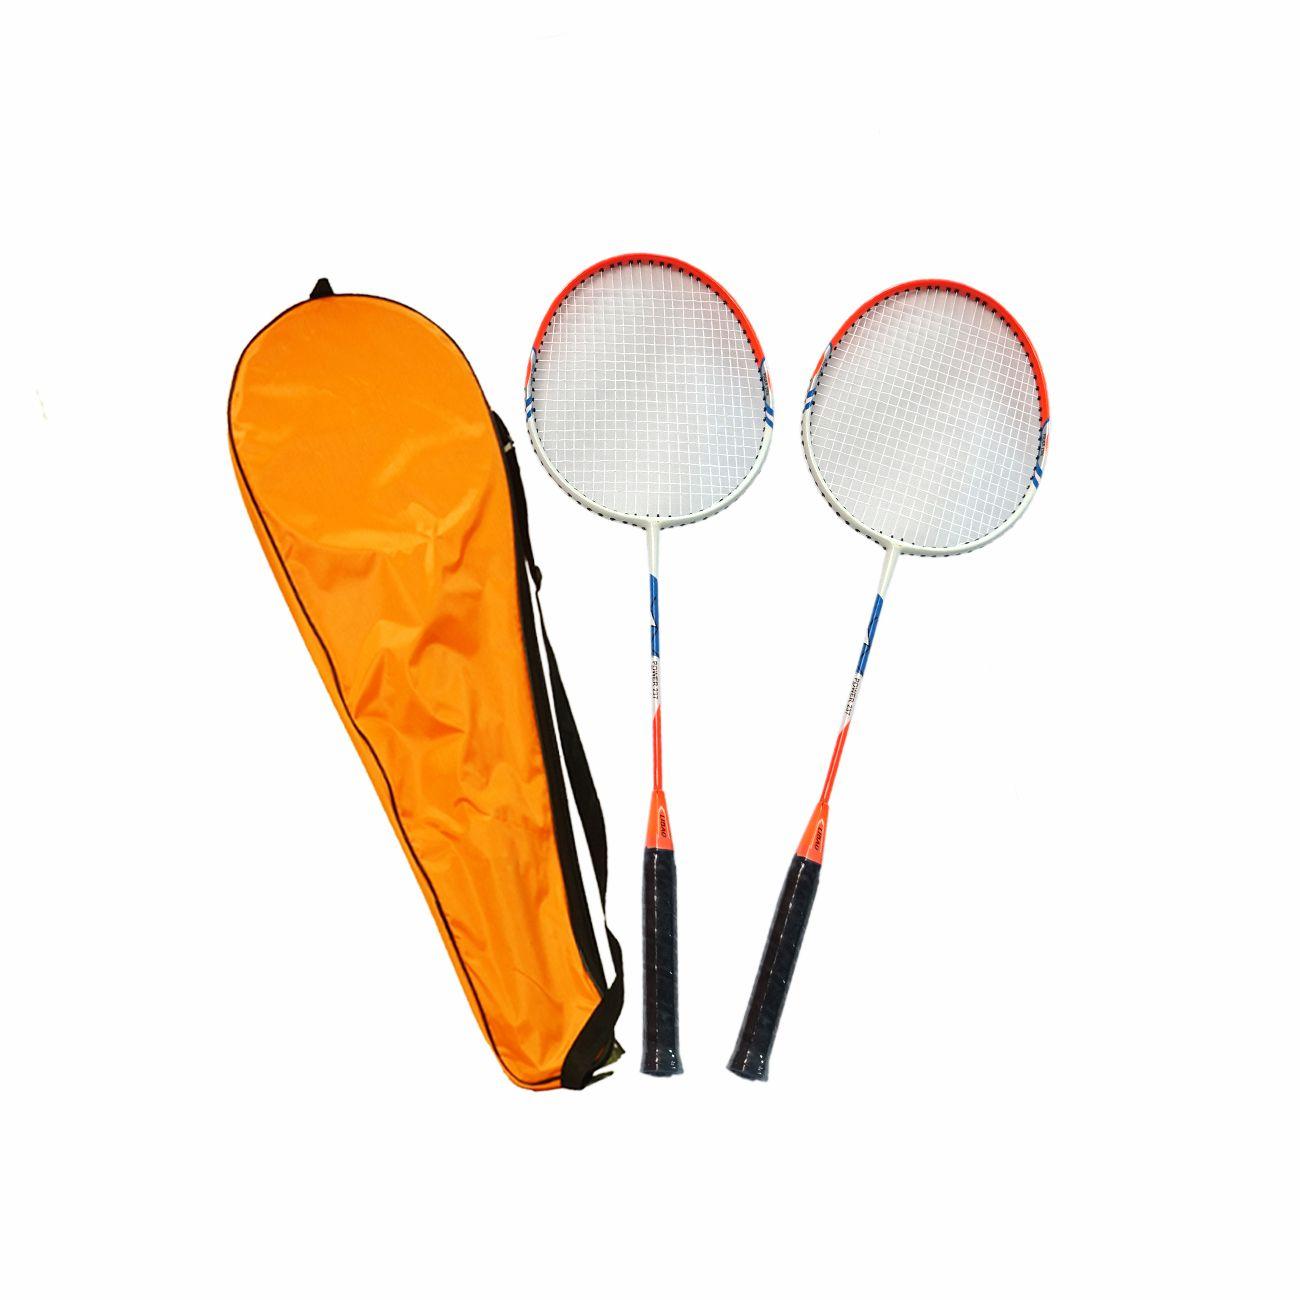 Selected image for DENIS Deluxe reketi za badminton crveni